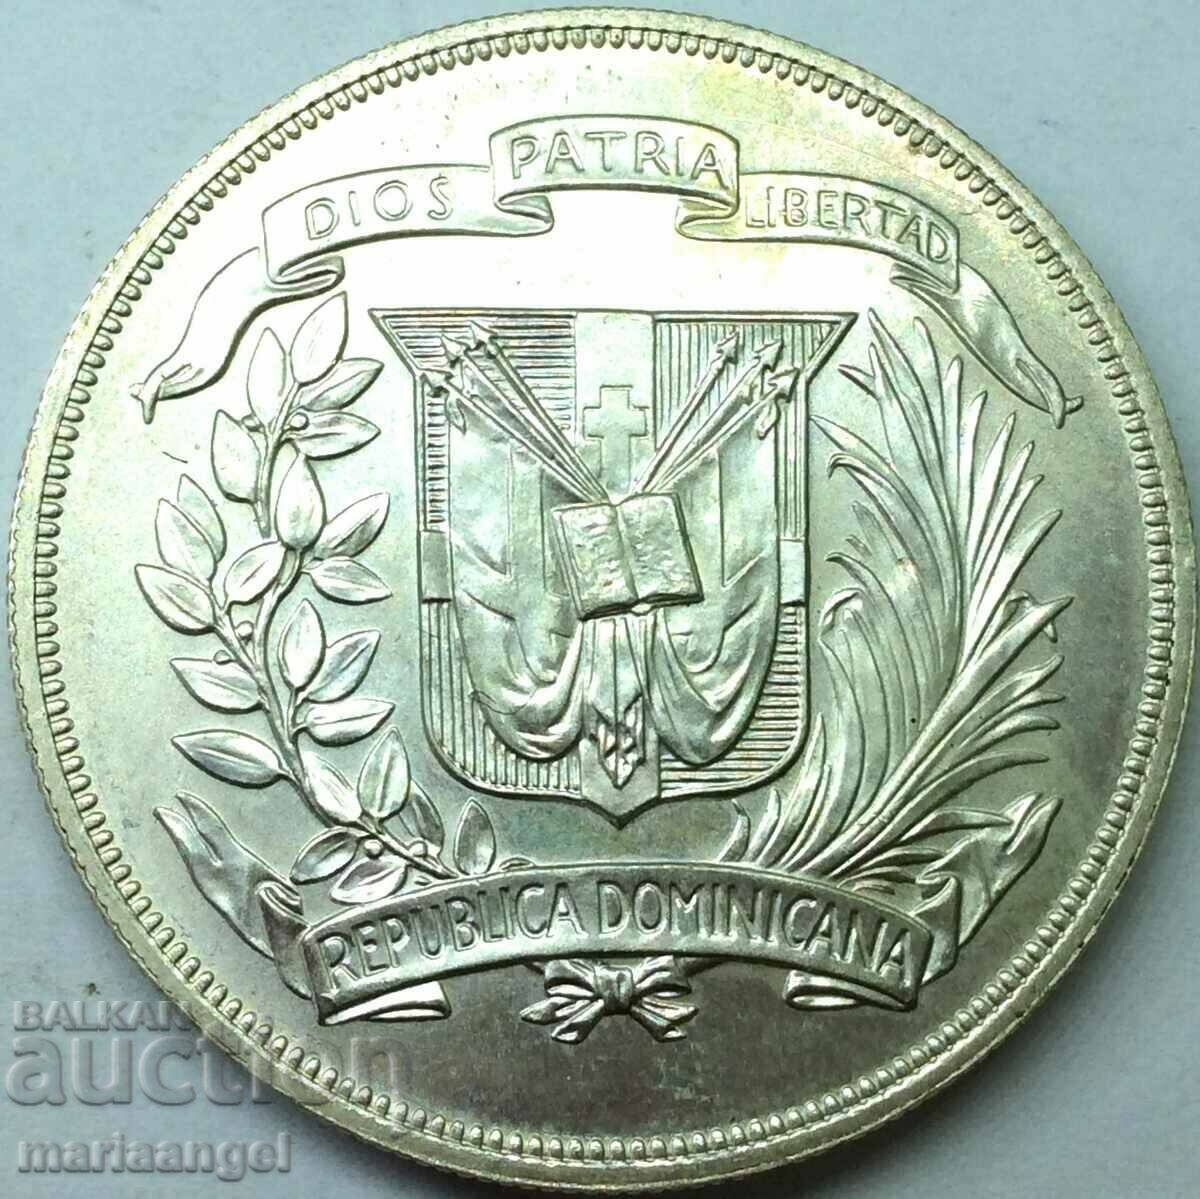 Dominican Republic 1 peso 1974 UNC 27.2g 0.9 silver